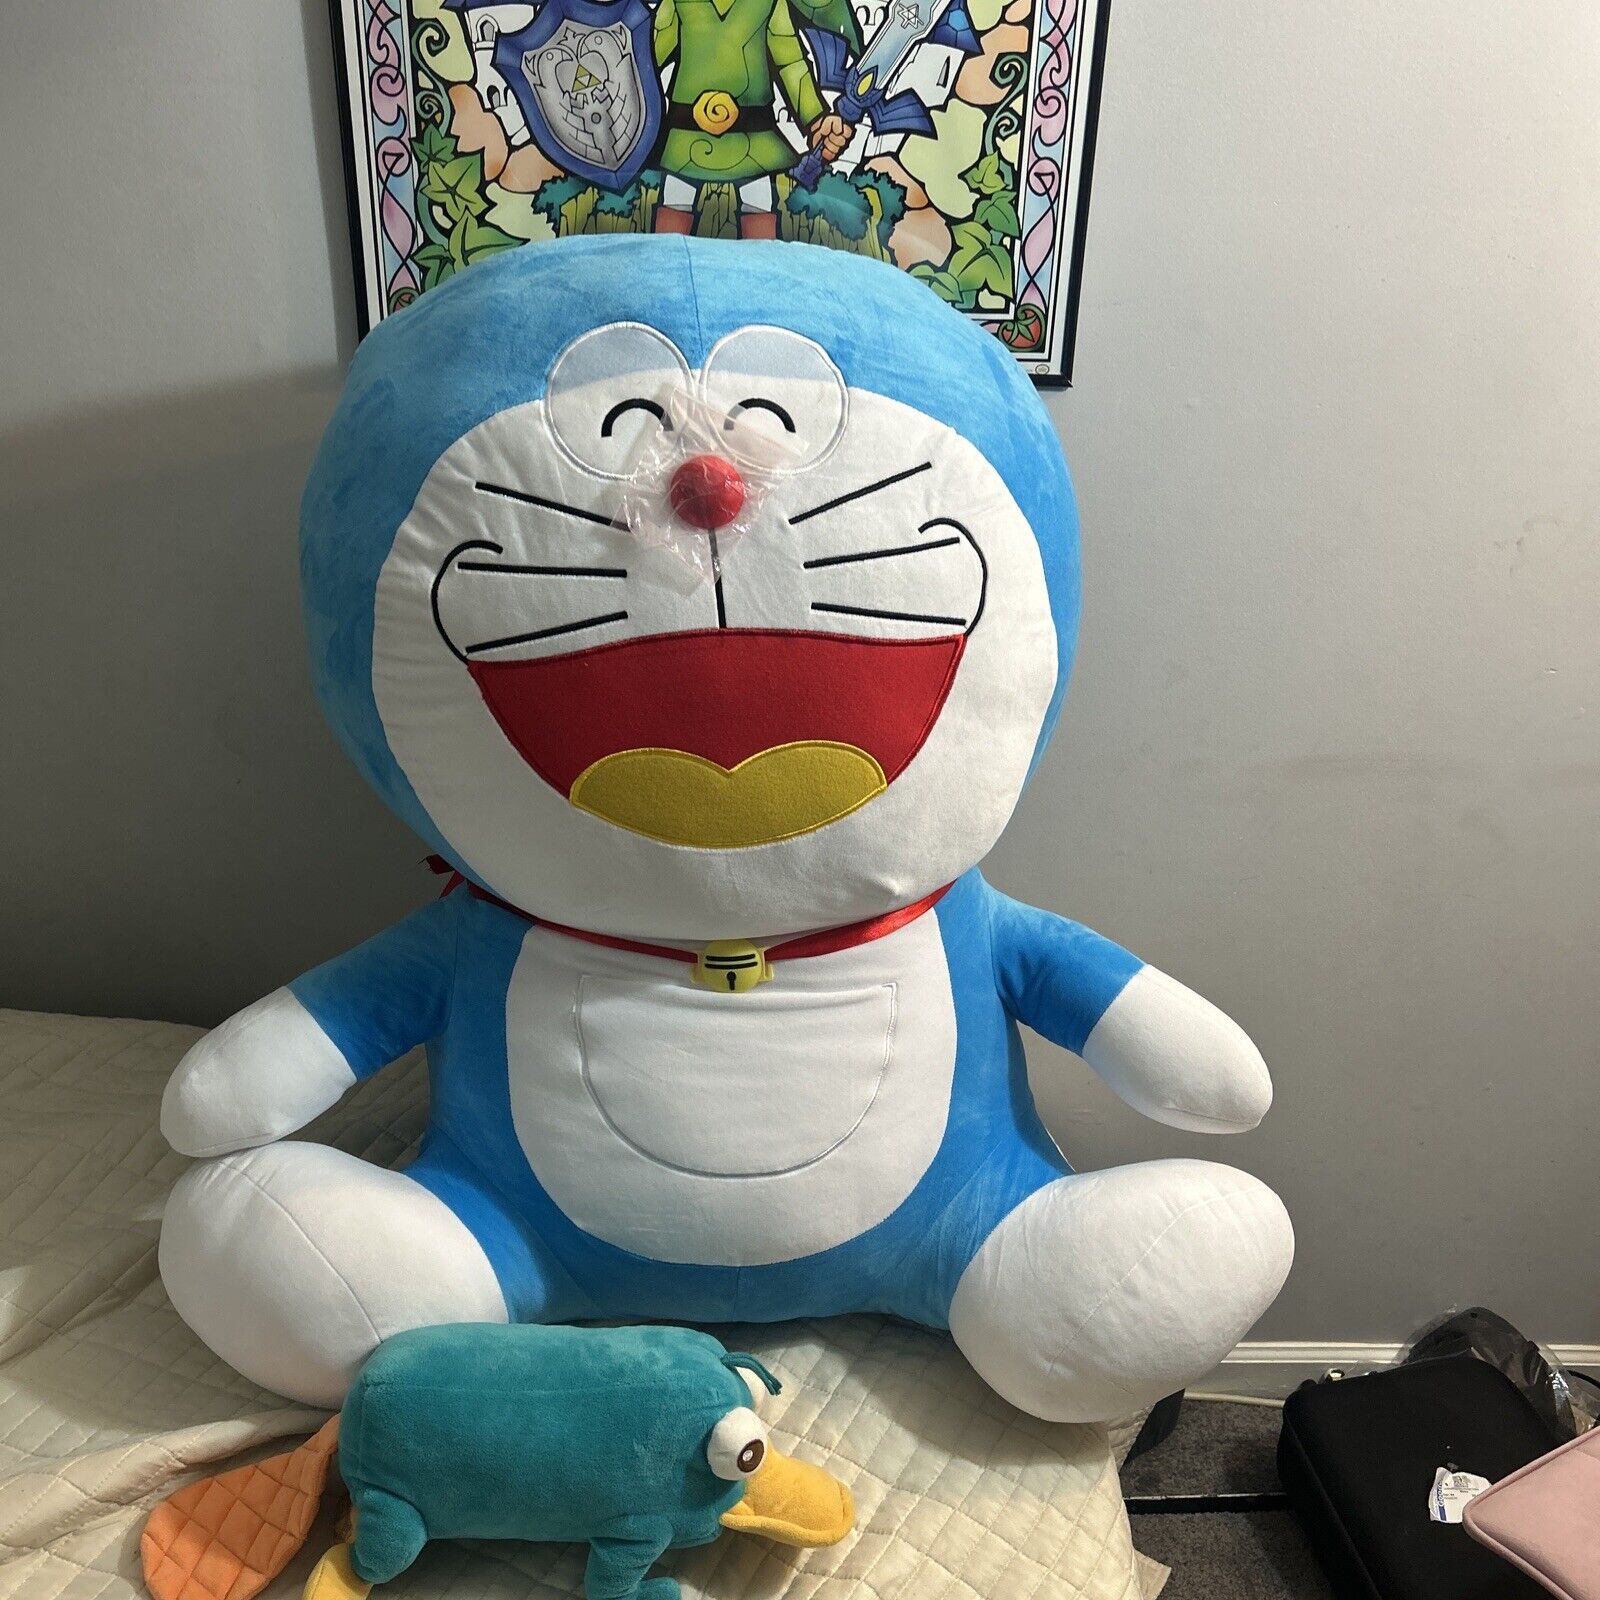 Doraemon Mega Jumbo Birthday Plush Toy 33”x 22x18 Huge